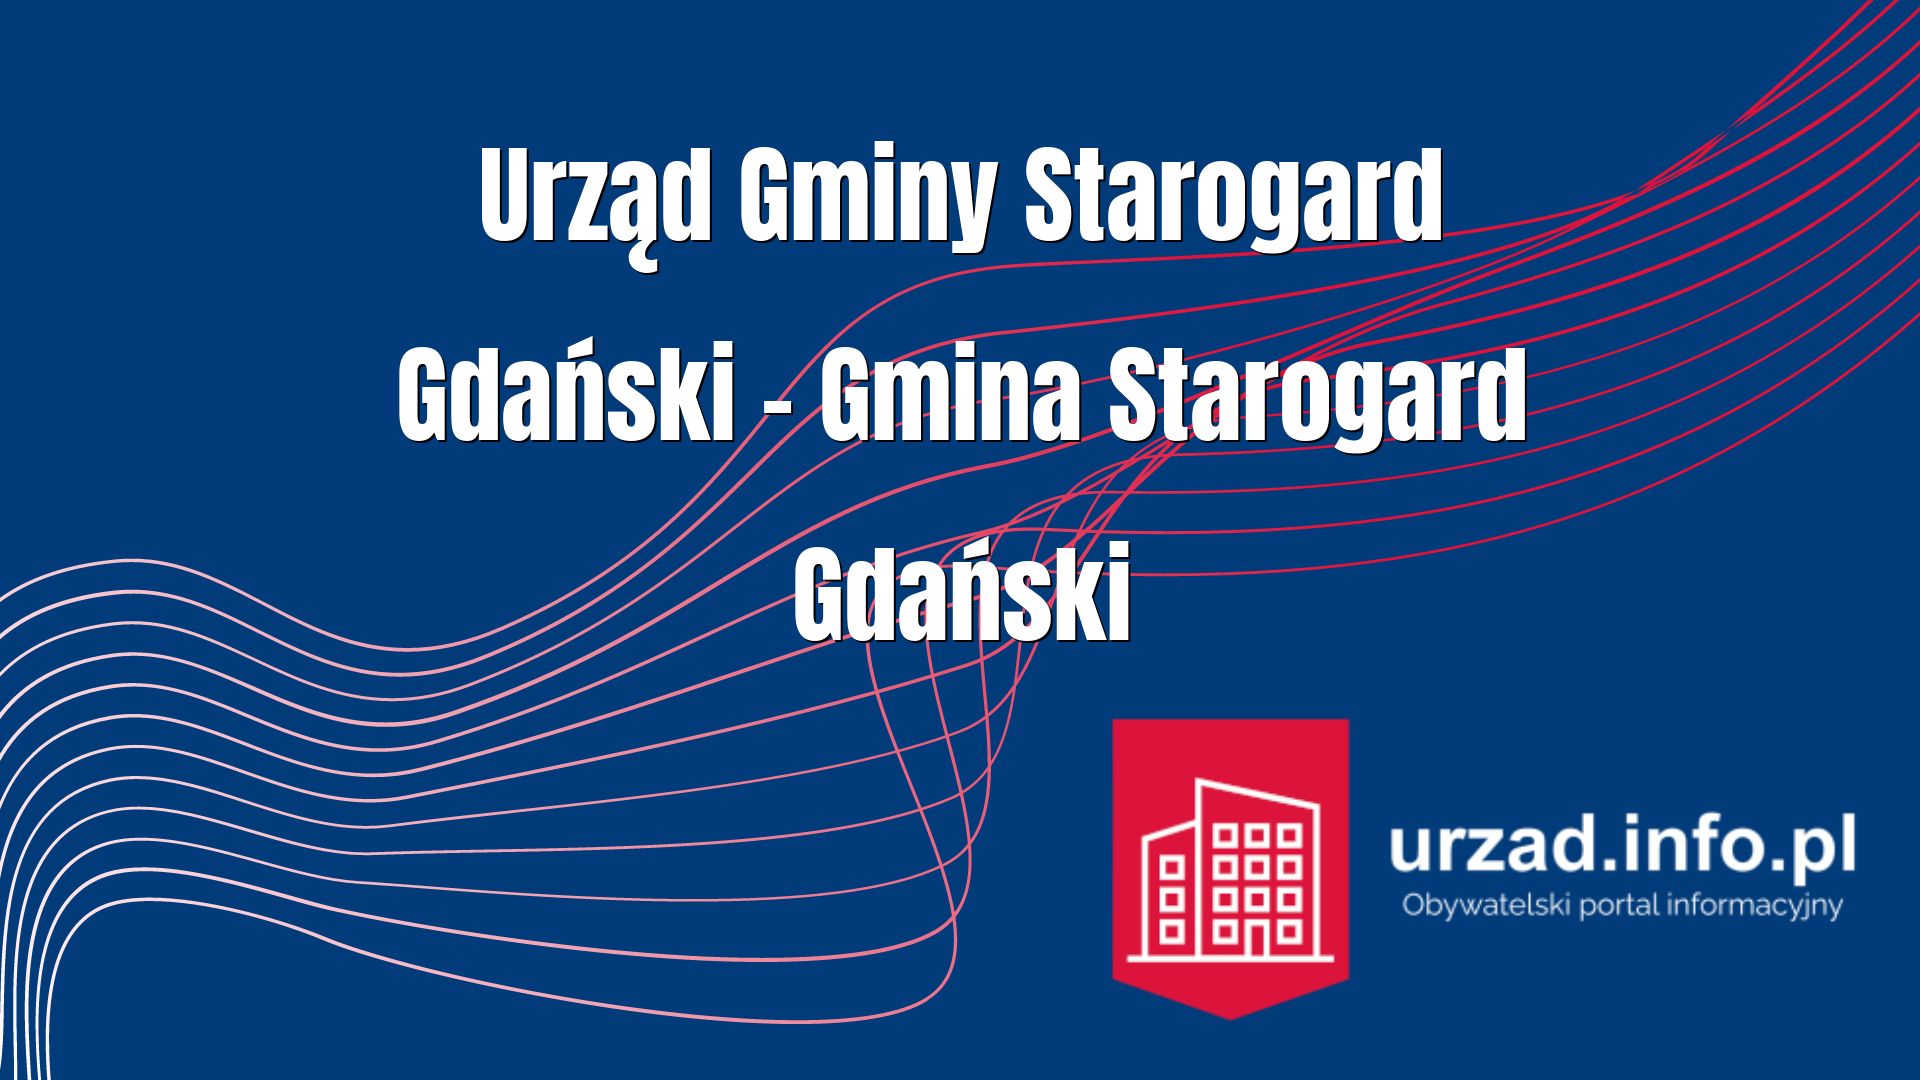 Urząd Gminy Starogard Gdański – Gmina Starogard Gdański